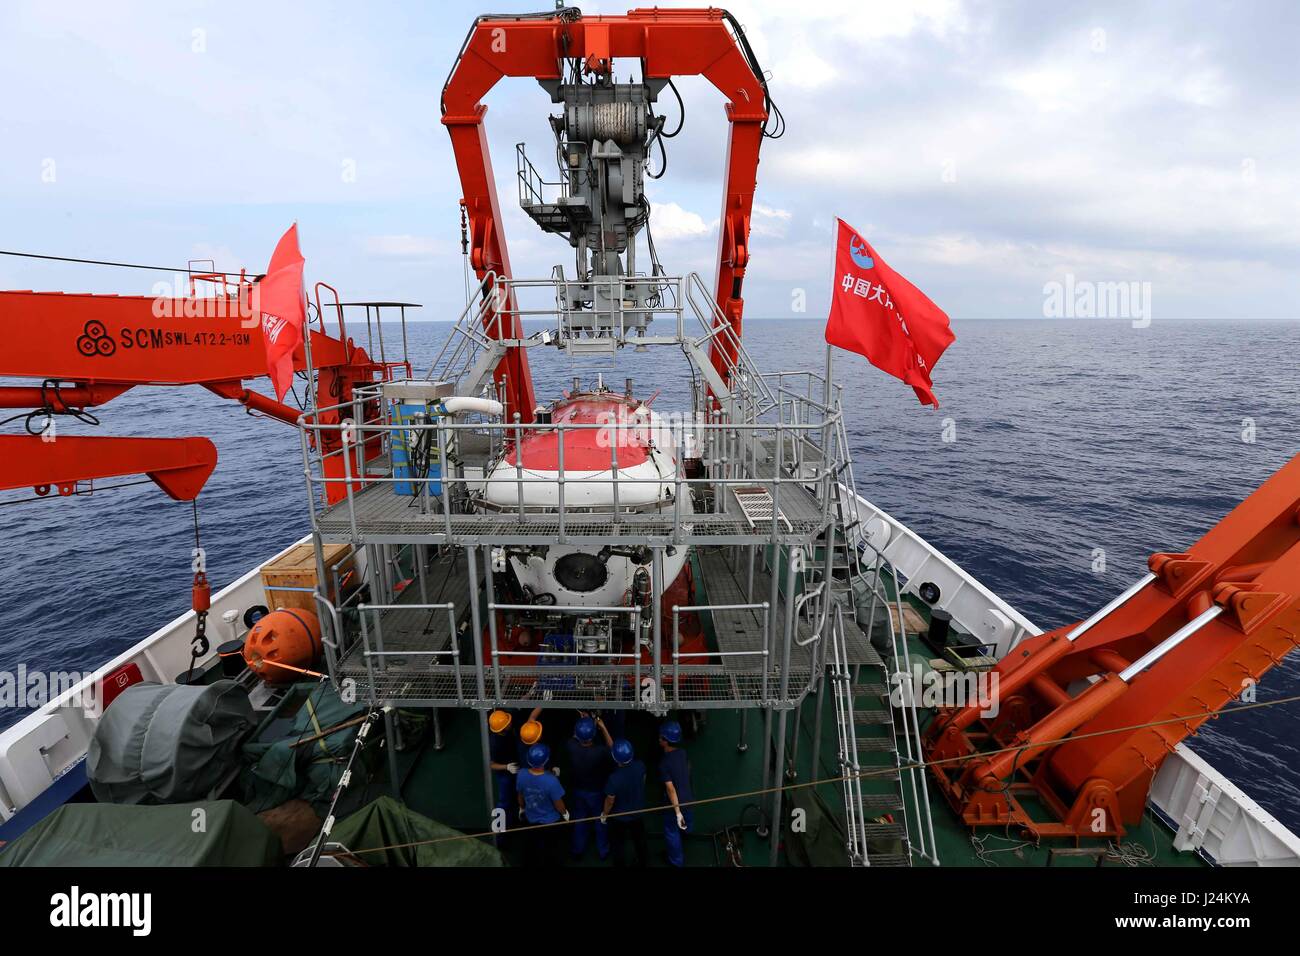 (170425) -- A BORDO DE BUQUES Xiangyanghong 09, 25 de abril de 2017 (Xinhua) -- personal de hacer preparativos para el submarino Jiaolong para realizar a bordo de buques de buceo Xiangyanghong 09 en el Mar de China Meridional, al sur de China, 25 de abril de 2017. Científicos chinos se embarcó en una misión de aguas profundas en el Mar del Sur de China el martes, el comienzo de la segunda etapa de China de la 38ª expedición oceánica. Sumergible tripulado Jiaolong china con su tripulación de científicos llegó a la ubicación a bordo de la nave madre Xiangyanghong 09. El submarino se espera realizar su primer zambullida en el Mar del Sur de China este año el miércoles. Foto de stock